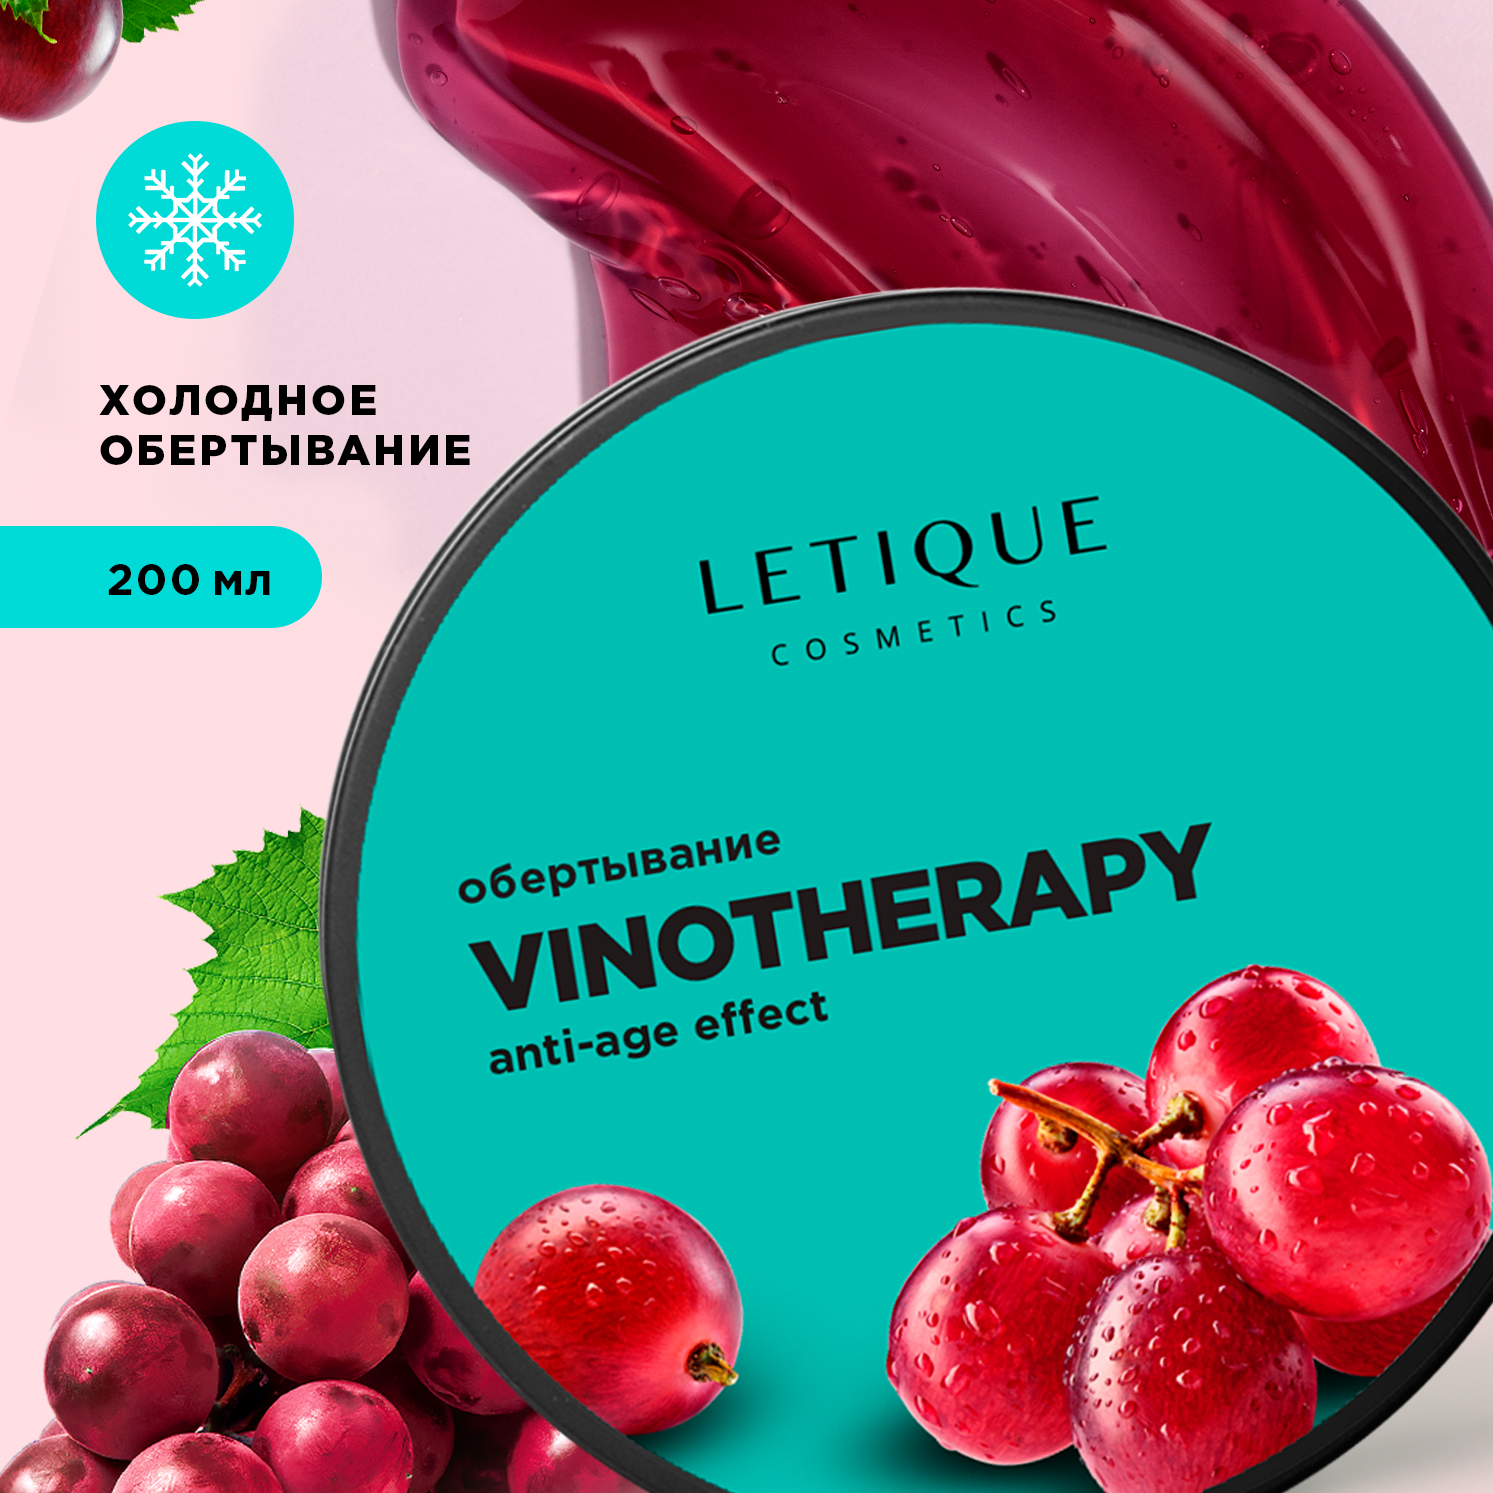 Обертывание холодное для тела Letique Cosmetics Vinotherapy letique cosmetics нежное масло для душа rose therapy 300